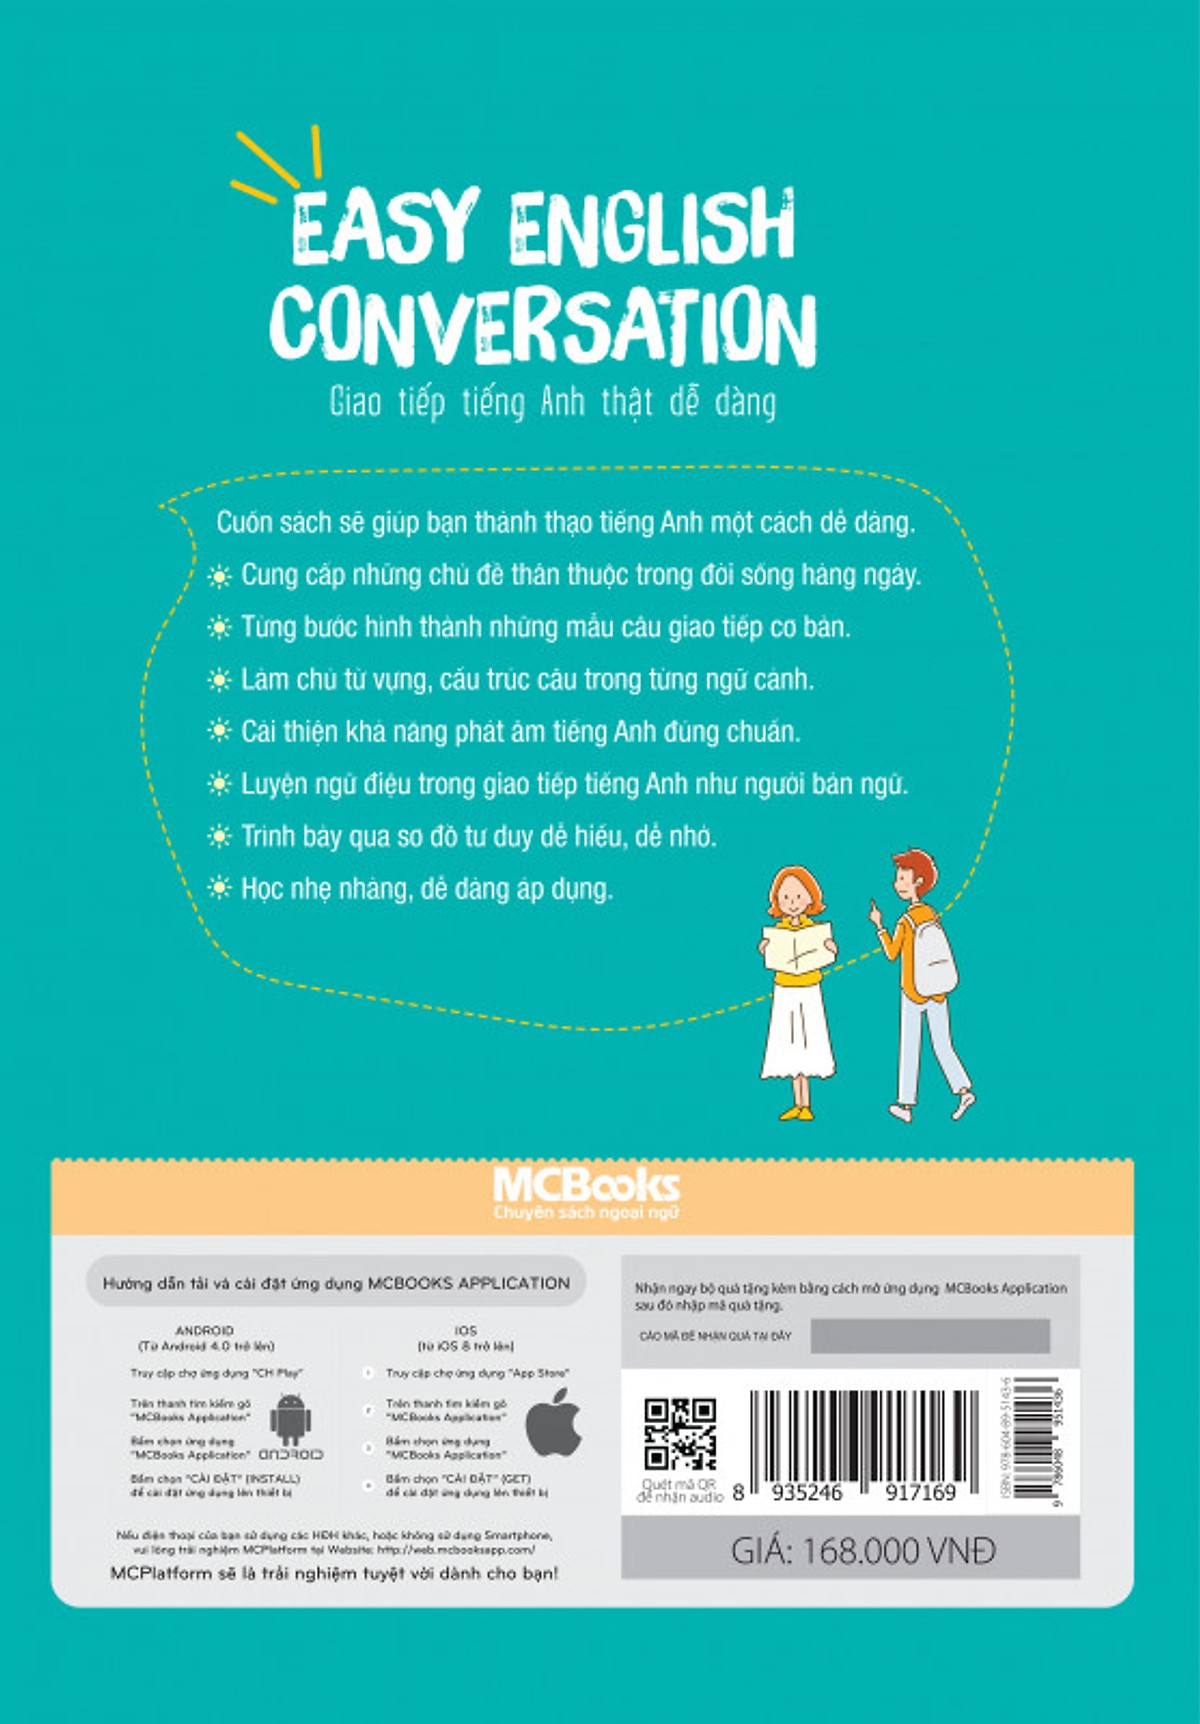 Easy English Conversation - Giao Tiếp Tiếng Anh Thật Dễ Dàng (Học Kèm App MCBooks Application)